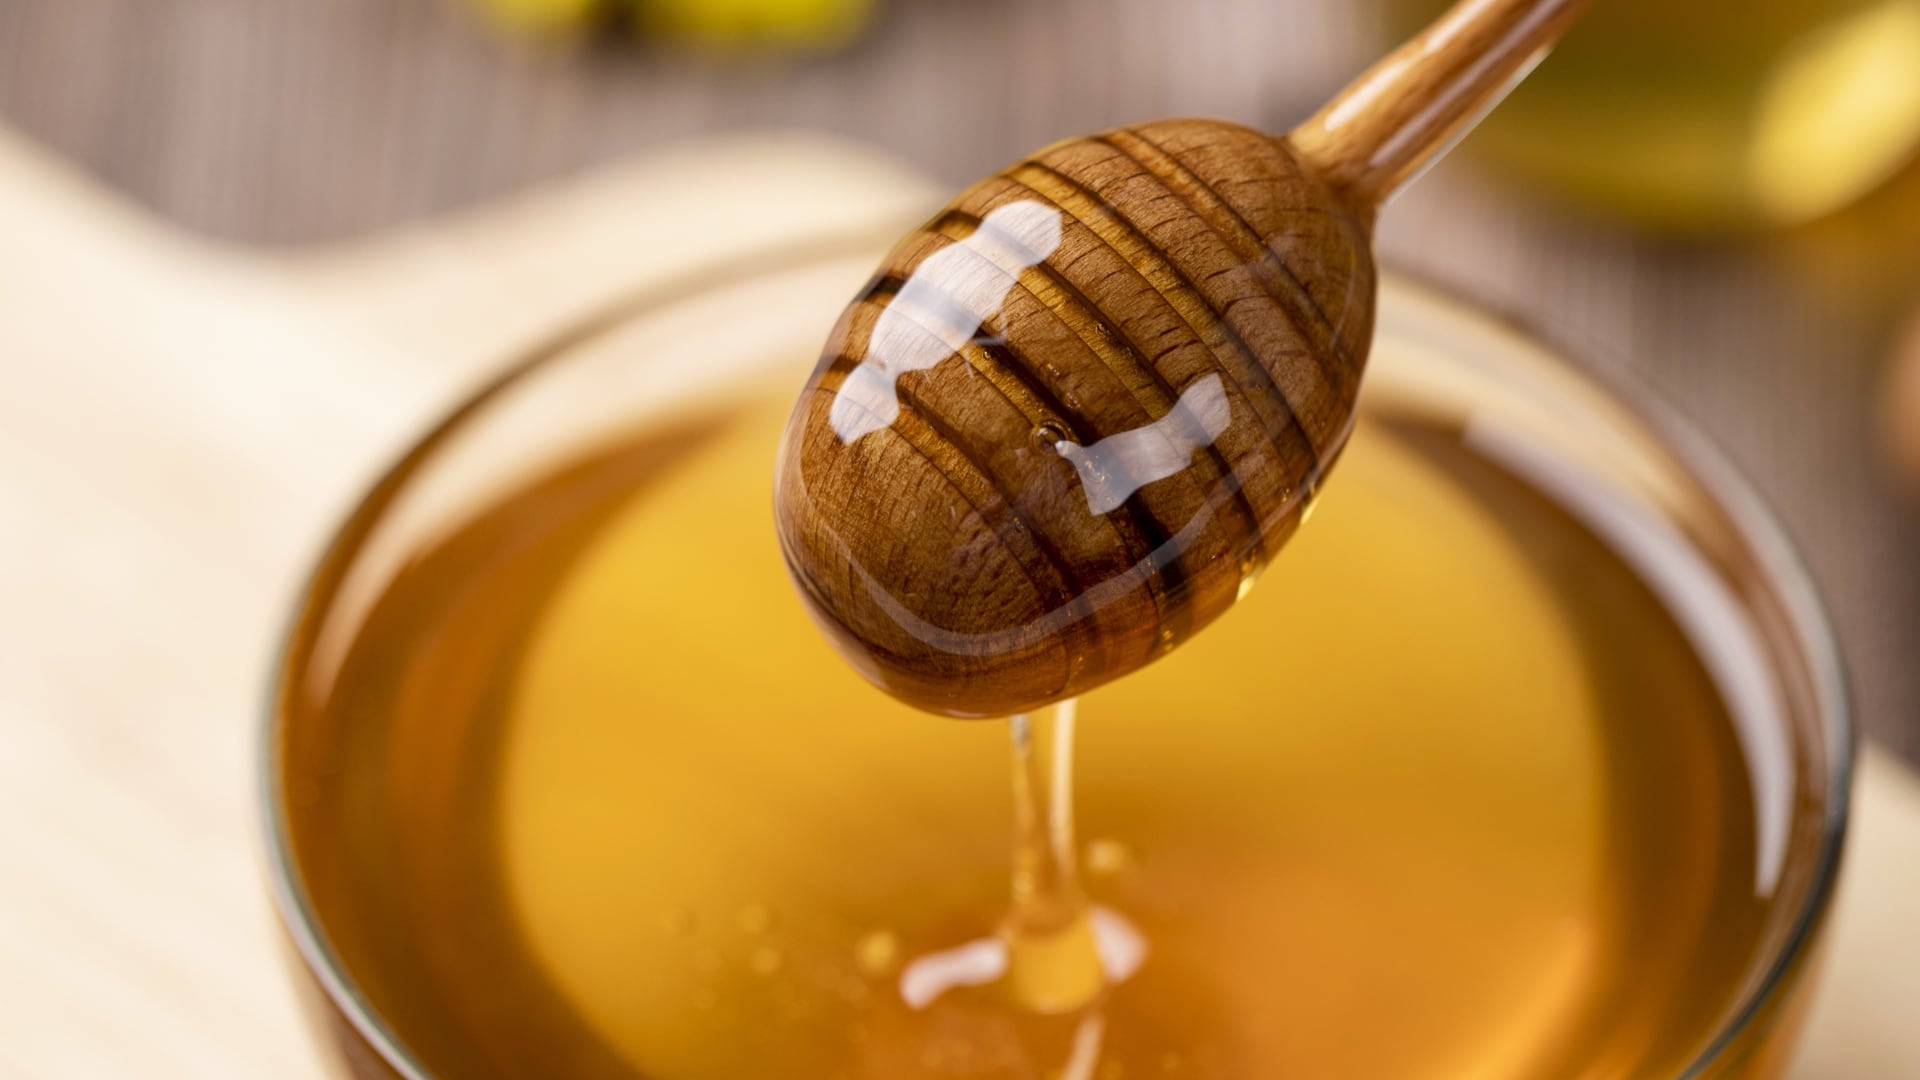 Al igual que otras mieles, la miel de abeja es alta en azúcar y calorías, por lo que debe consumirse con moderación.